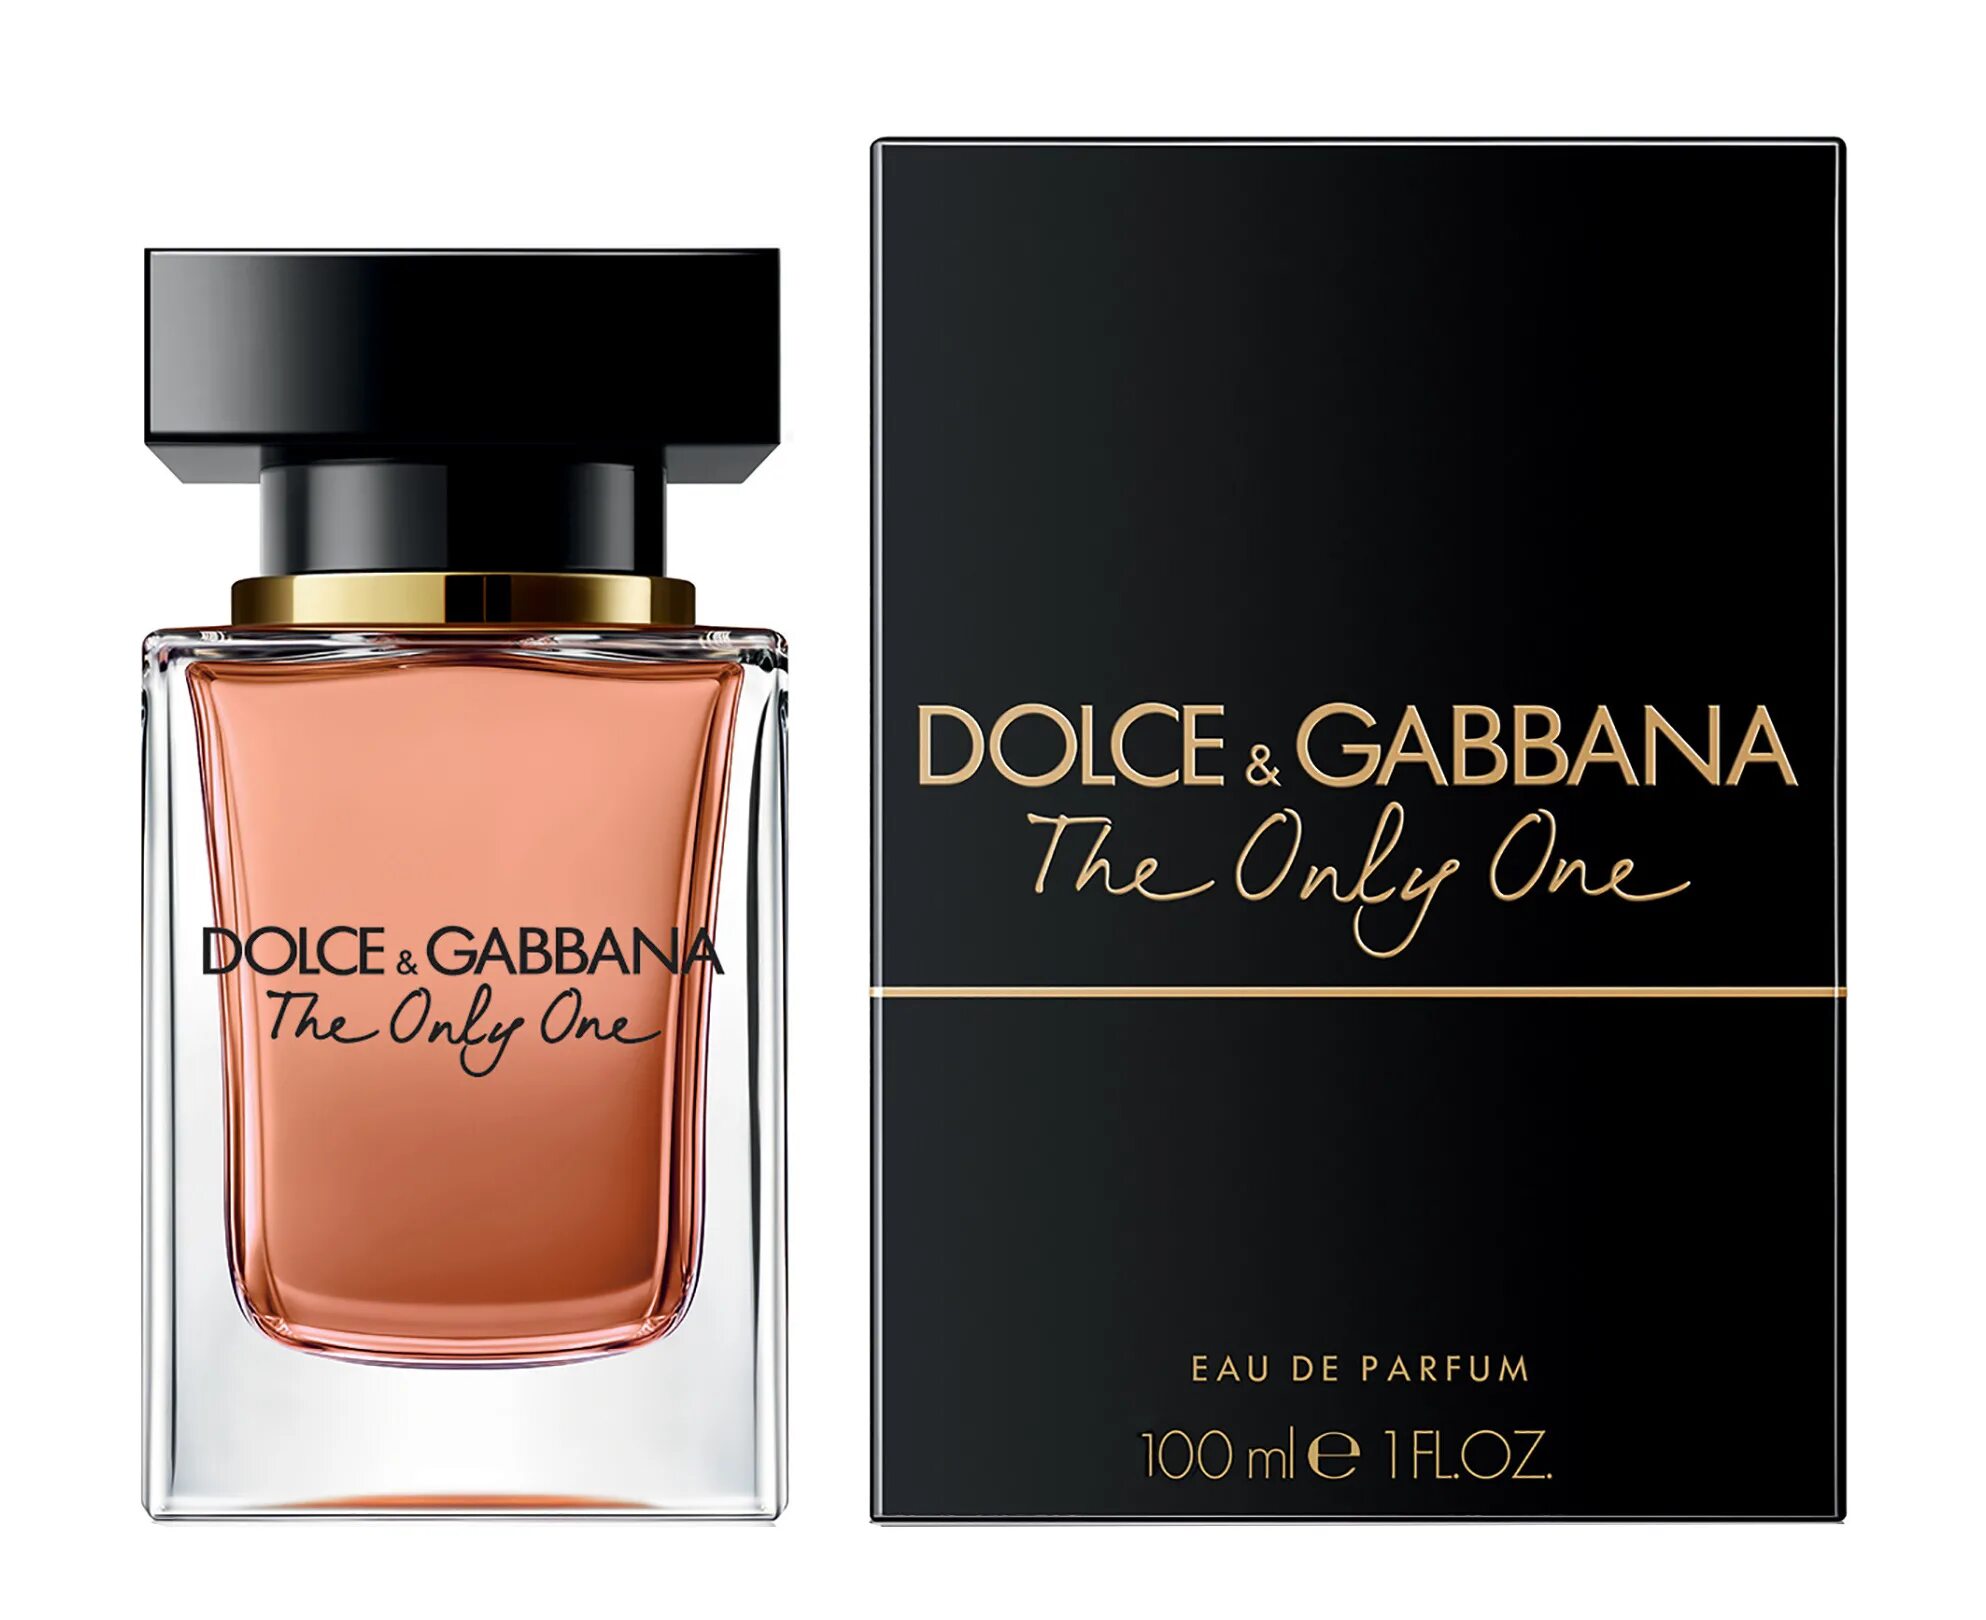 Дольче габбана 100мл цена. Dolce & Gabbana the only one, EDP., 100 ml. Dolce & Gabbana the only one EDP 50 ml. Dolce Gabbana the only one 100ml. Dolce Gabbana the only one 50ml.